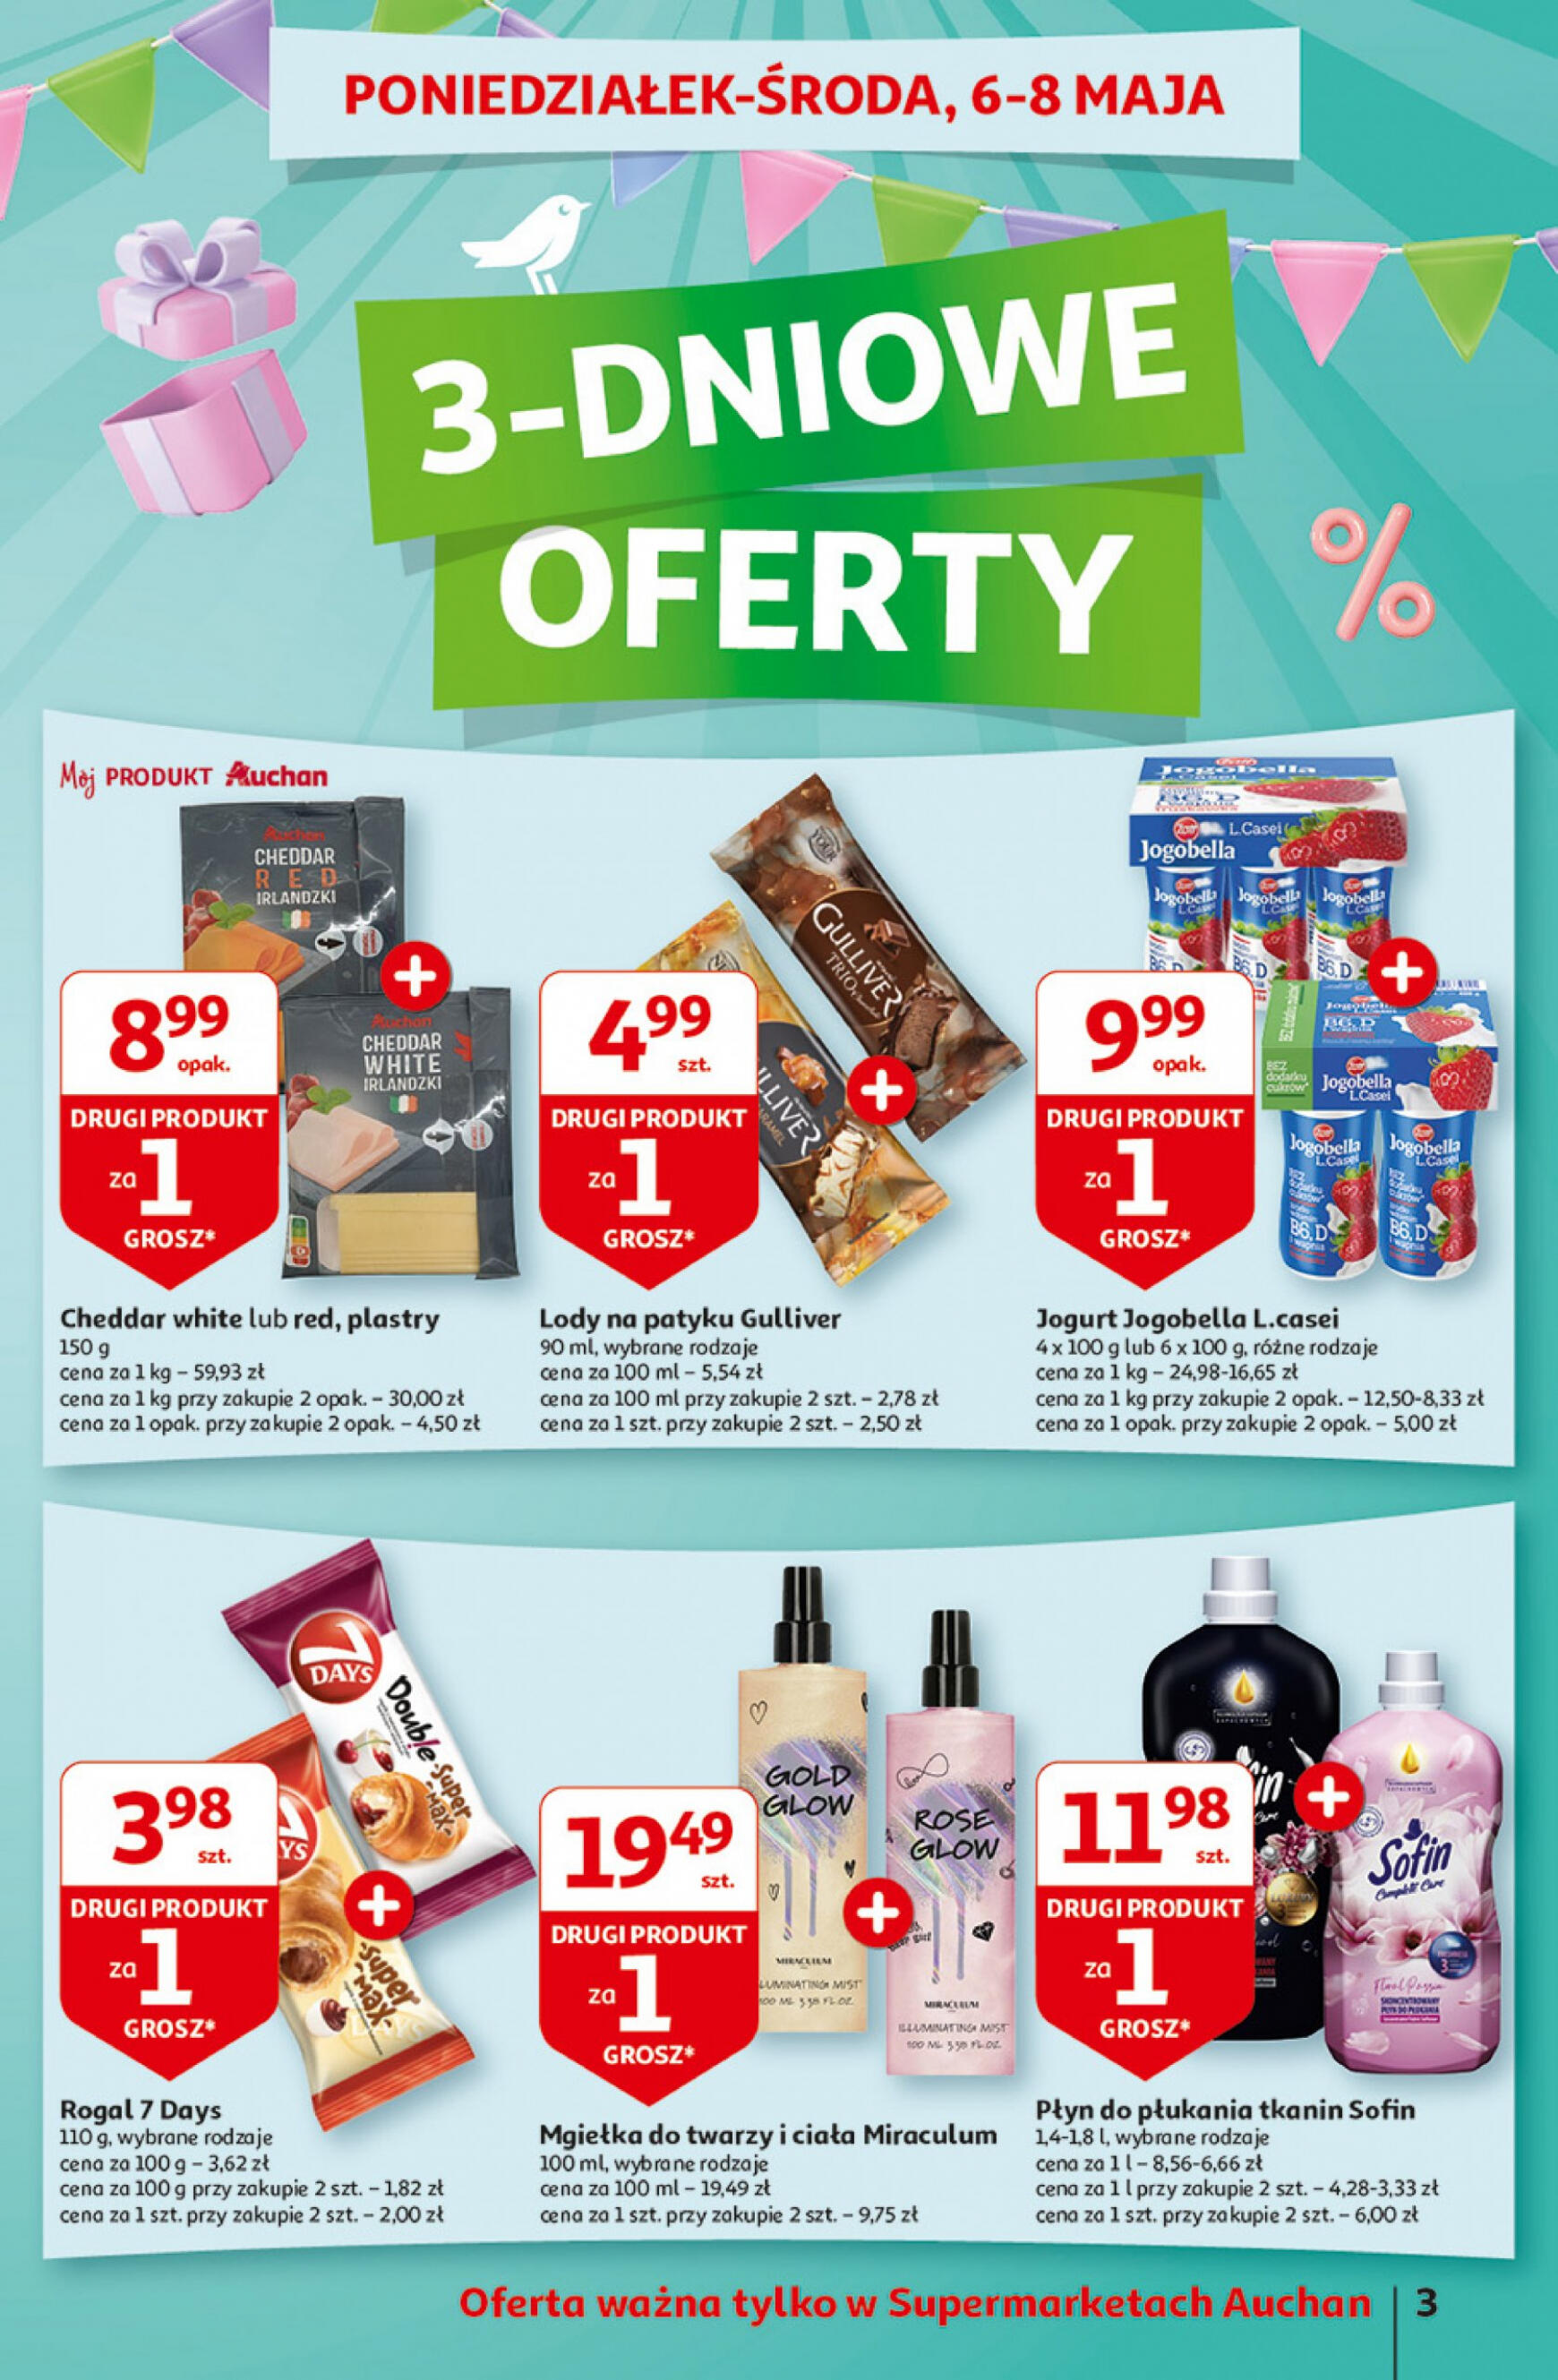 auchan - Supermarket Auchan - Gazetka Jeszcze taniej na urodziny gazetka aktualna ważna od 02.05. - 08.05. - page: 3